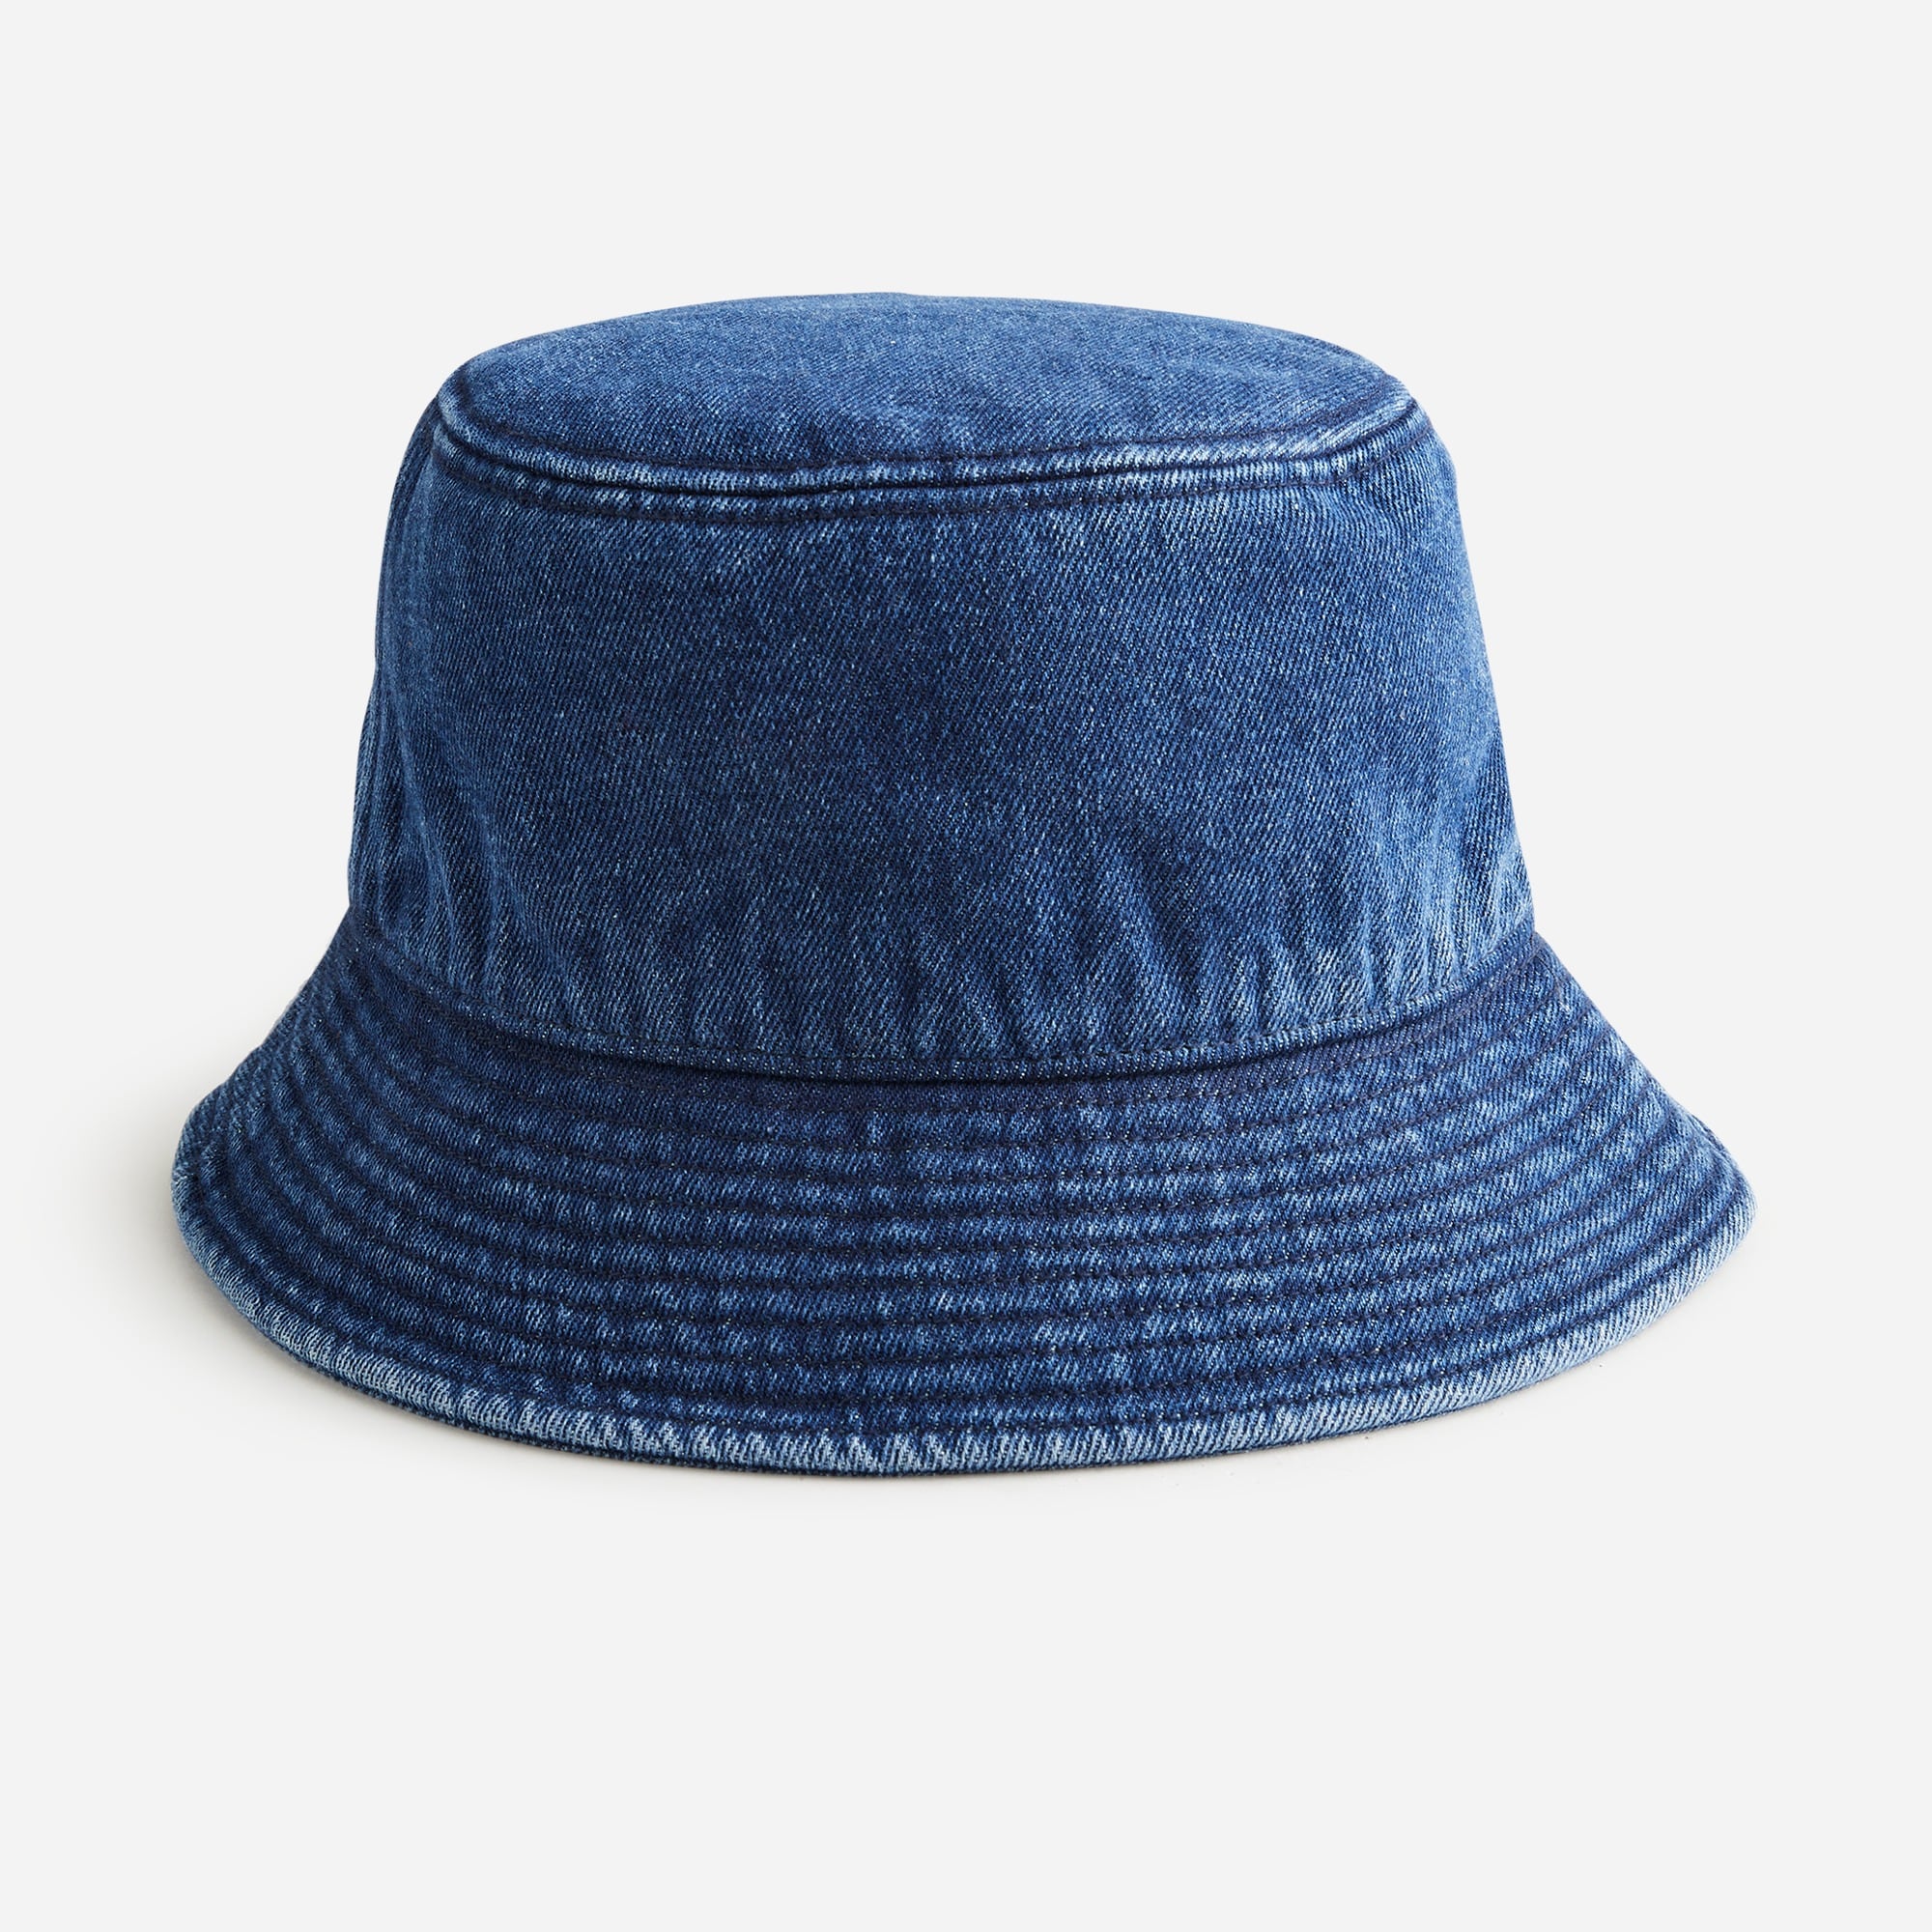 J.Crew: Denim Bucket Hat For Women